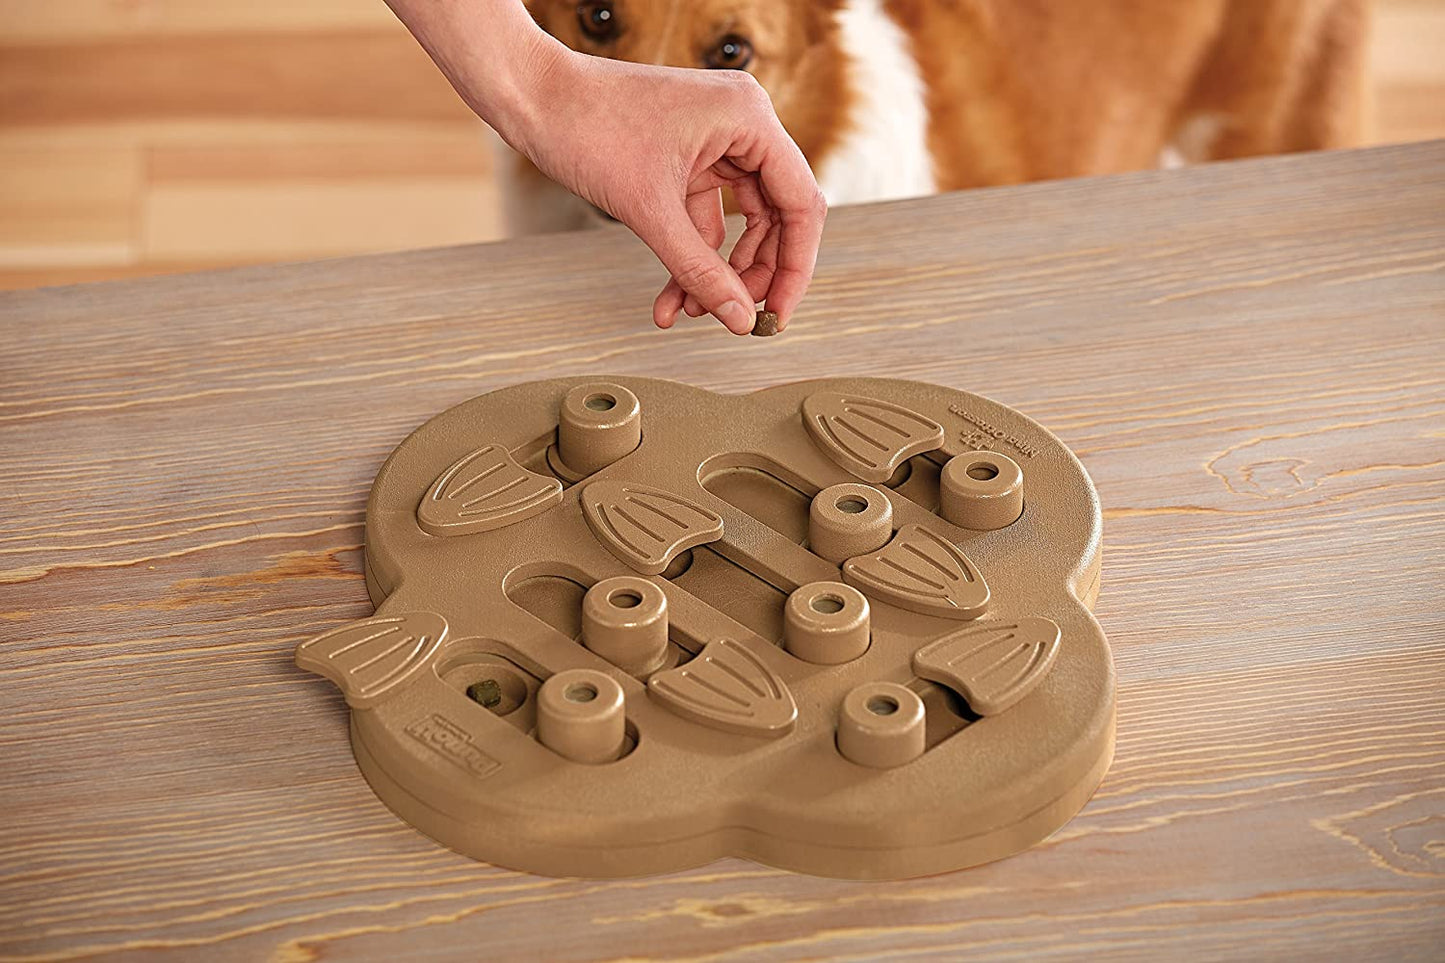 Nina Ottosson - Brinquedo interativo para cães com quebra-cabeça